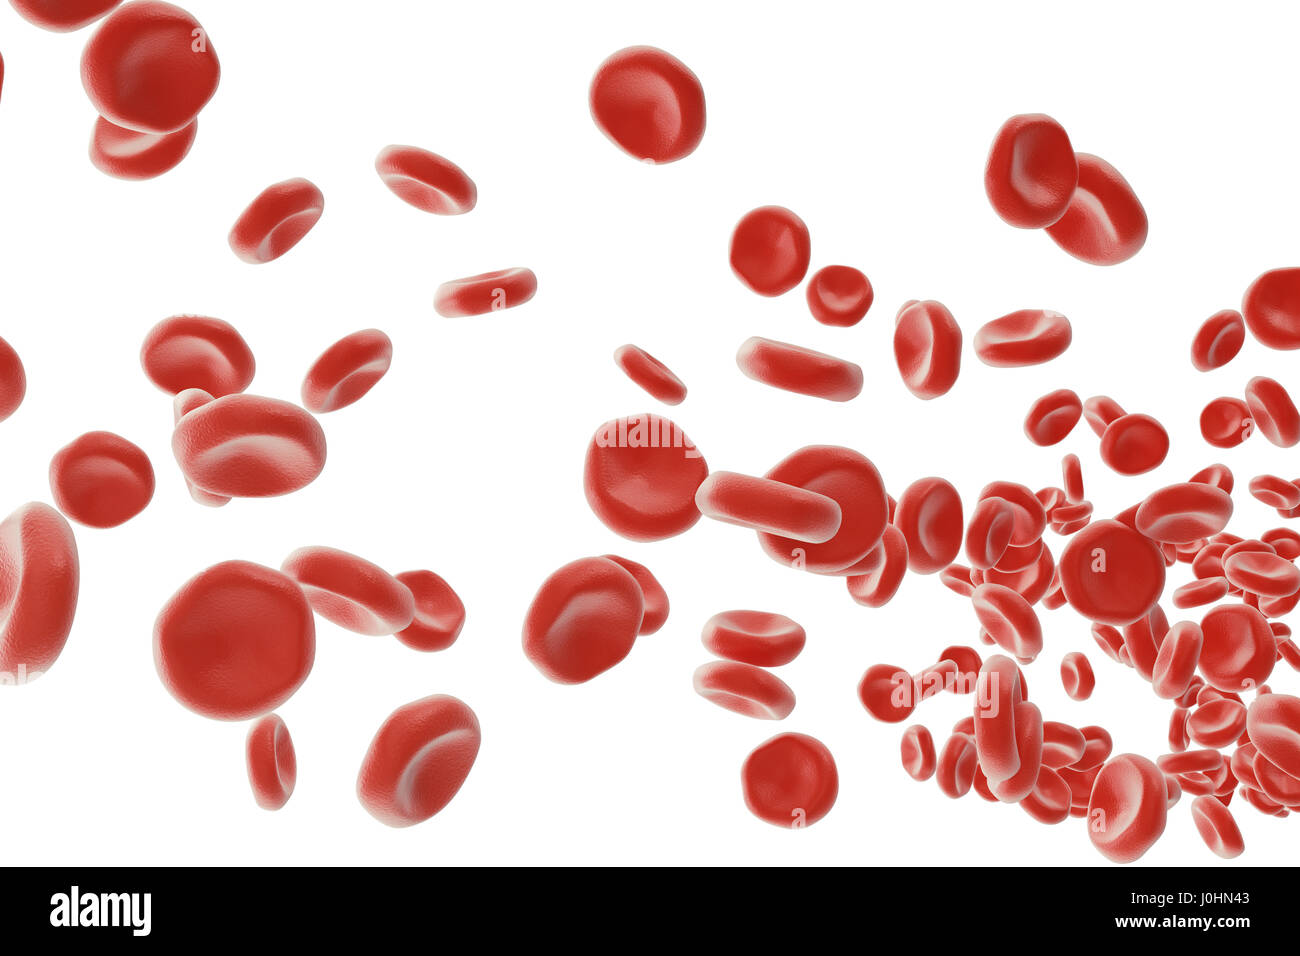 Rote Blutkörperchen: für Sauerstoff Übertrag, Verordnung pH Blut, Nahrung und Schutz der Käfige des Organismus verantwortlich. 3D-Rendering isoliert auf weißem Migrationshintergrund Stockfoto